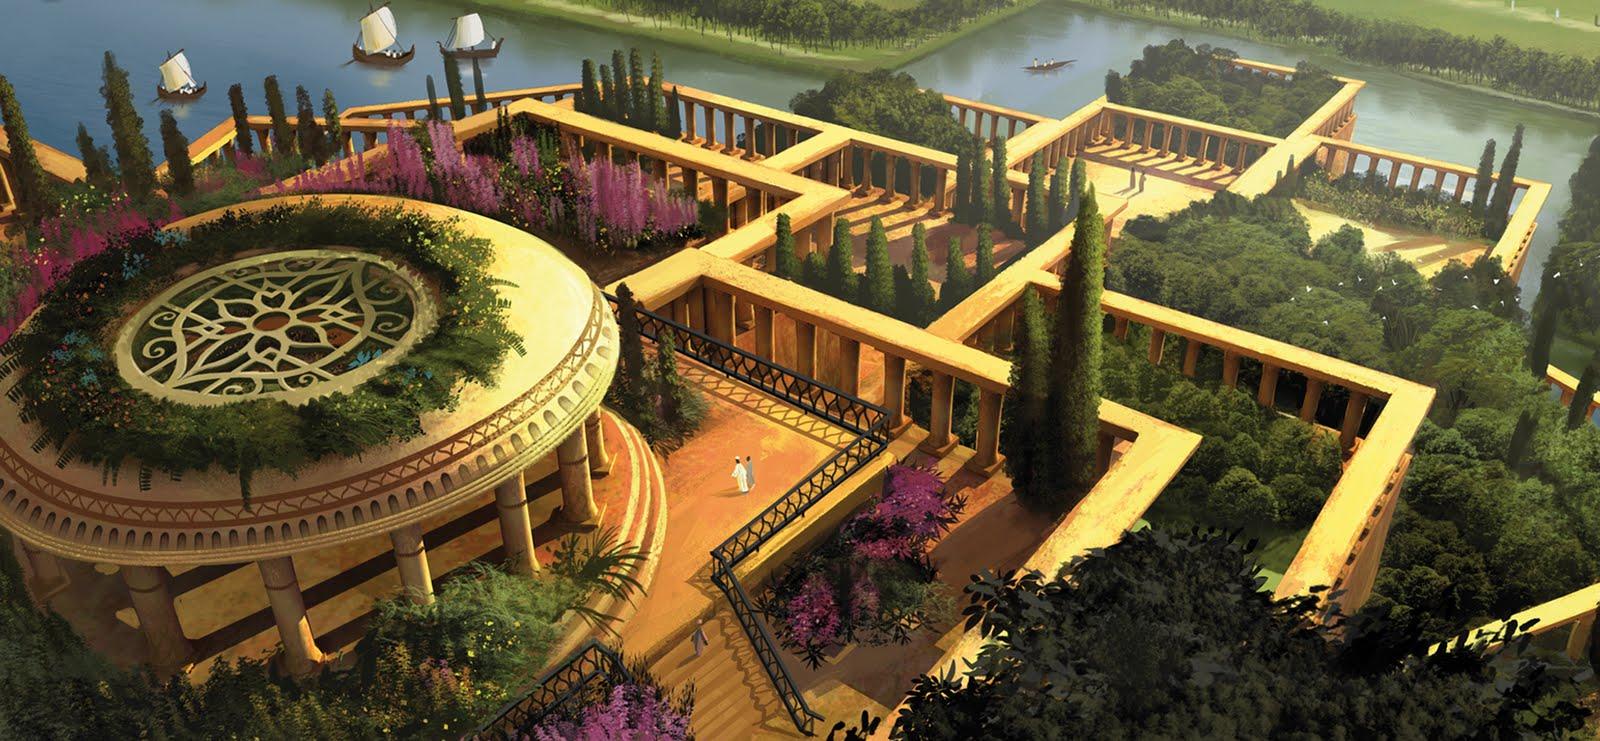 Los jardines colgantes de Babilonia